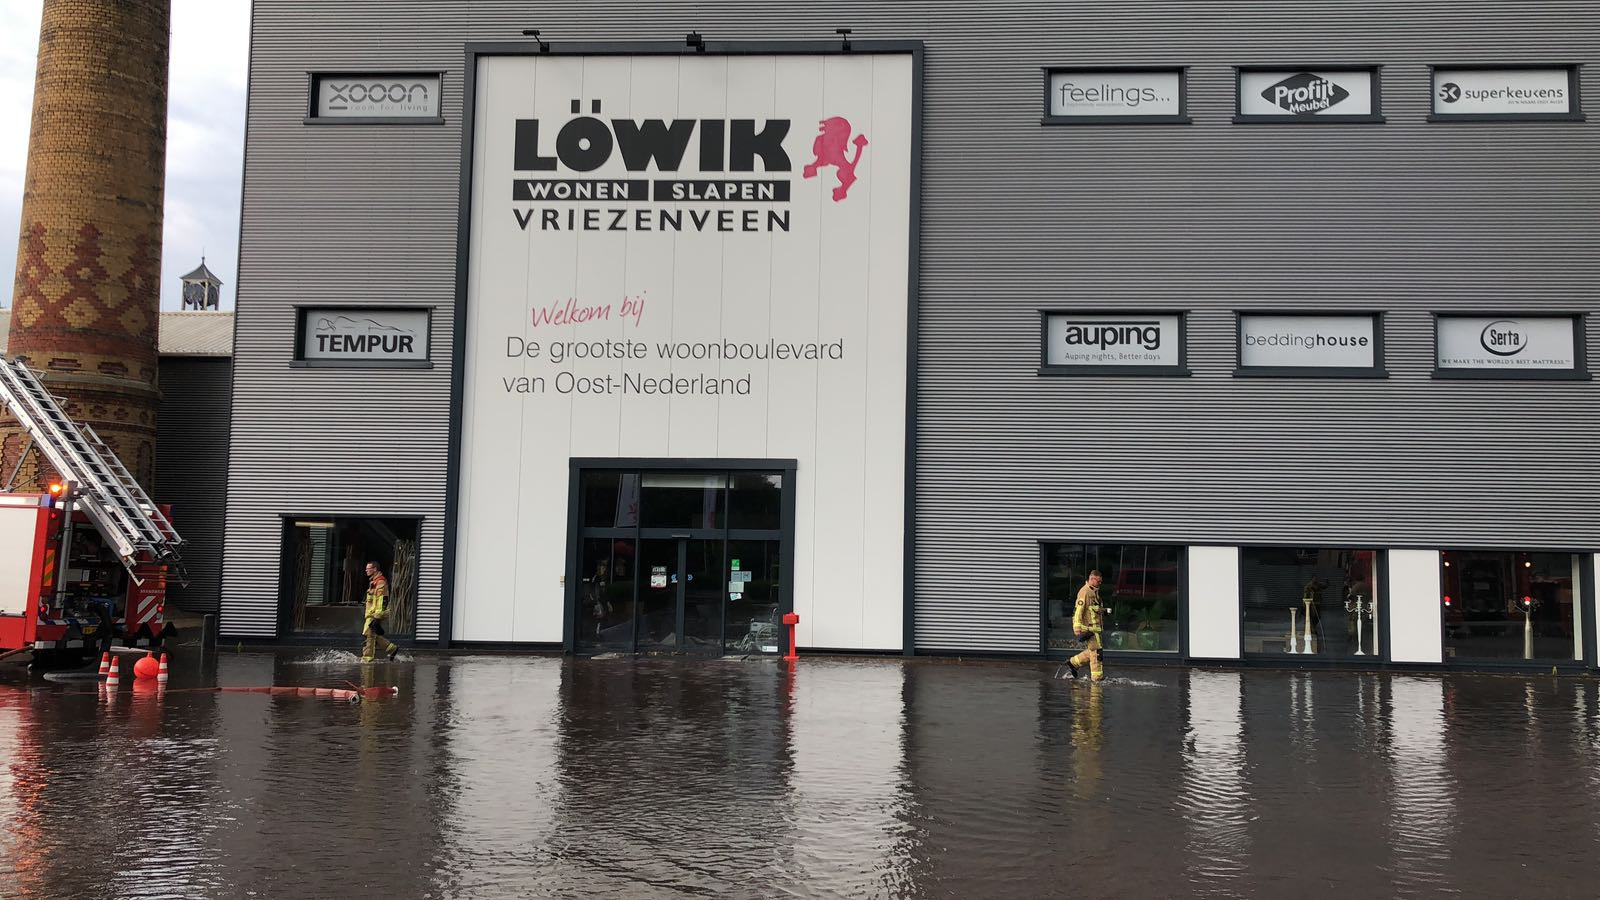 Herhaal kraai Om toevlucht te zoeken Dak stort in bij Löwik in Vriezenveen | Foto | tubantia.nl